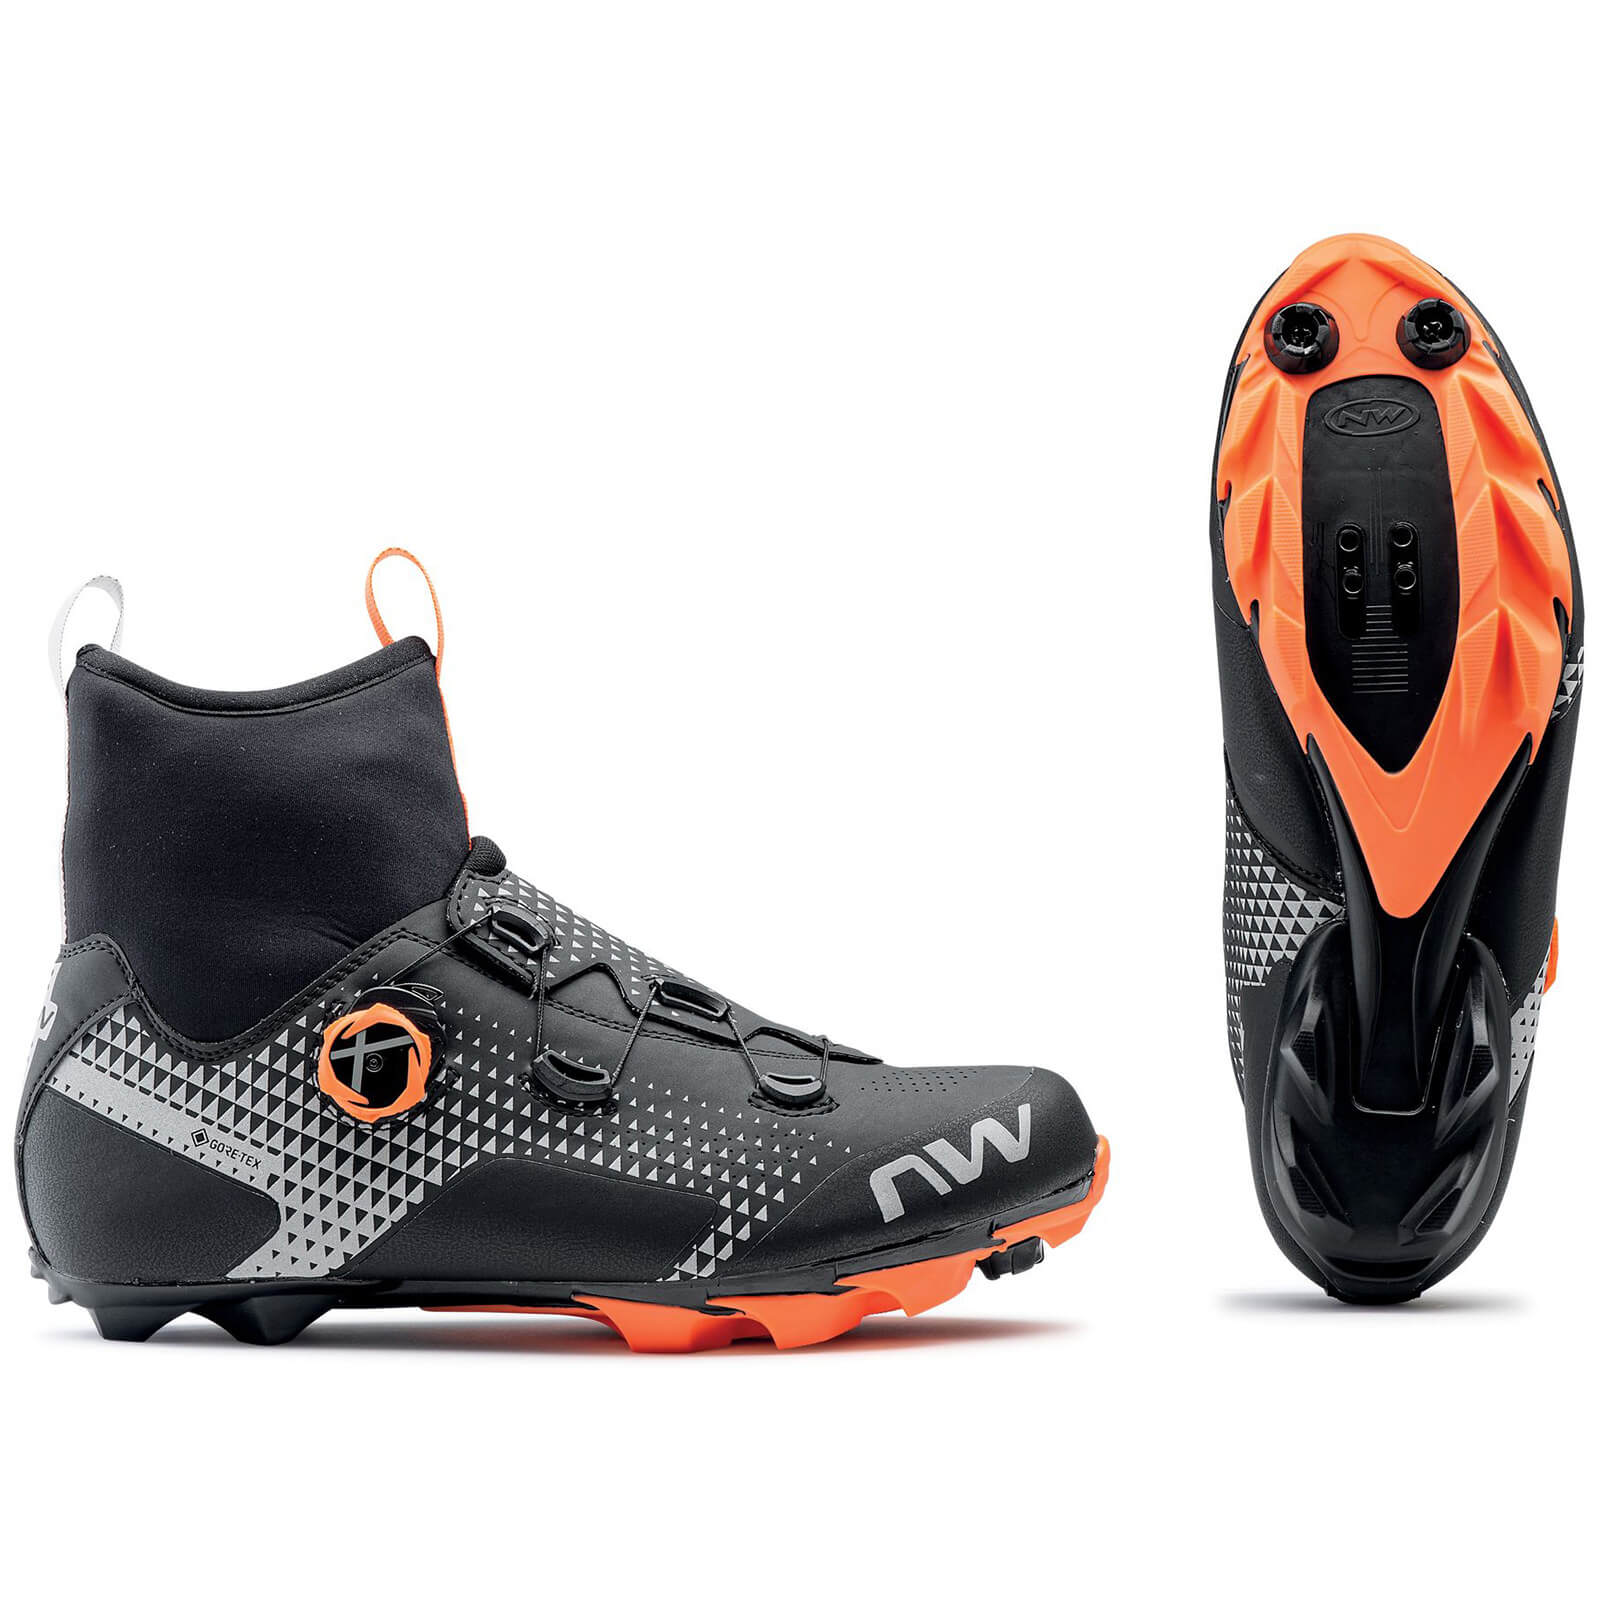 Northwave - Celsius XC GTX MTB Shoes - EU44 - Black / Orange / Reflective